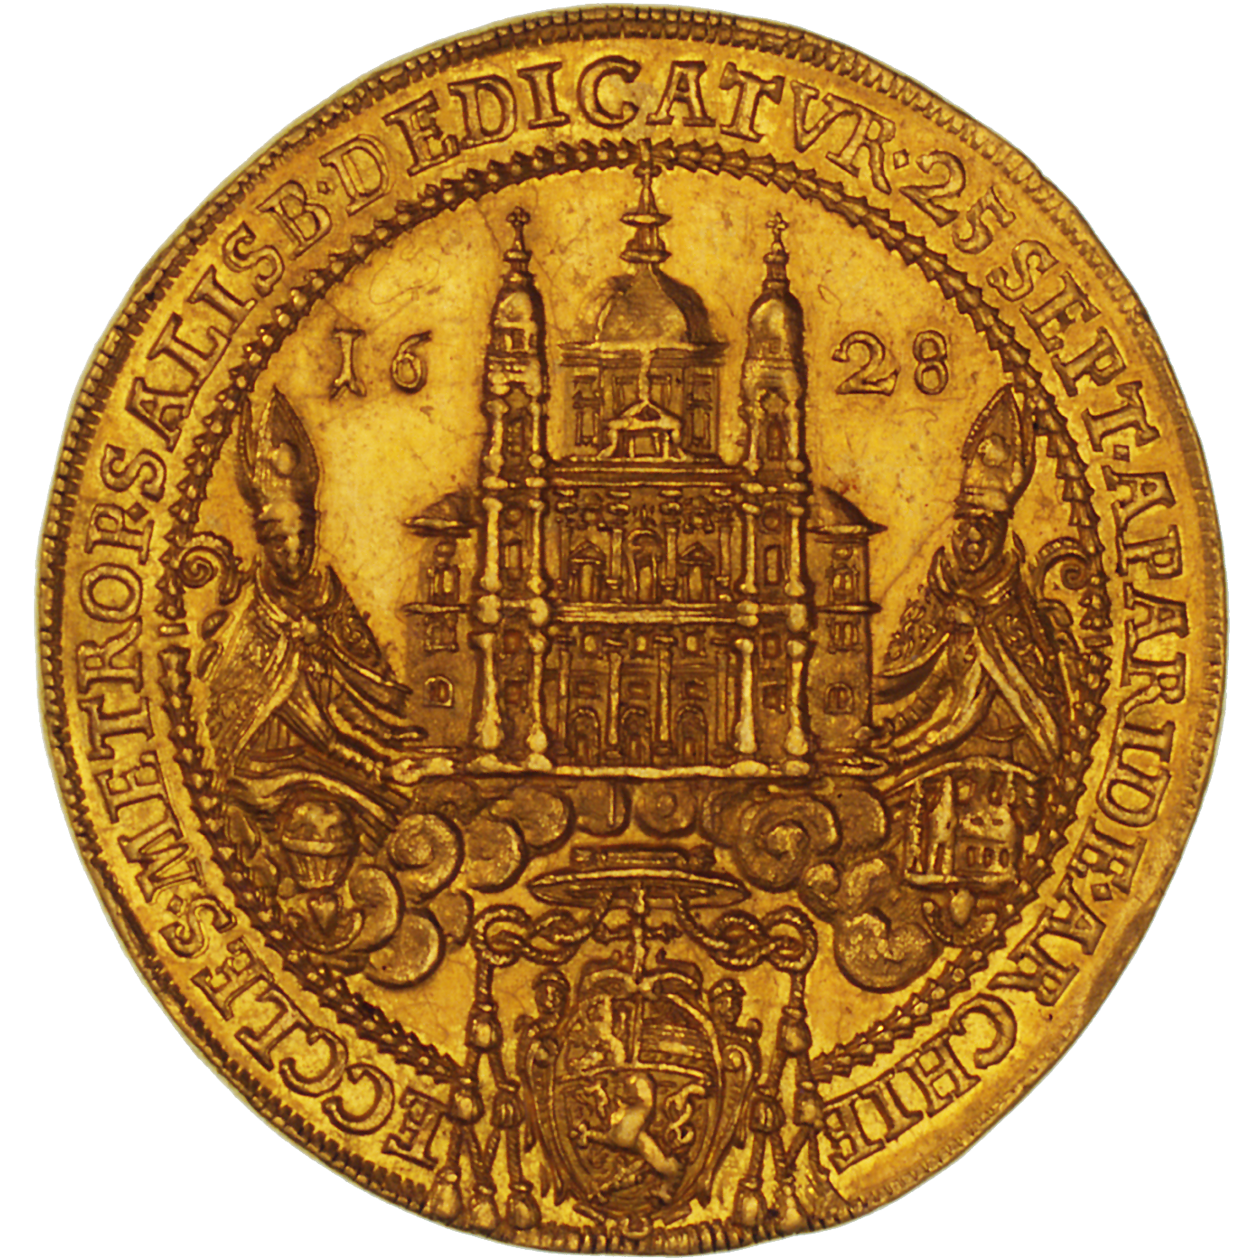 Heiliges Römisches Reich, Fürstbistum Salzburg, Paris von Lodron, 4 Dukaten 1628 (obverse)